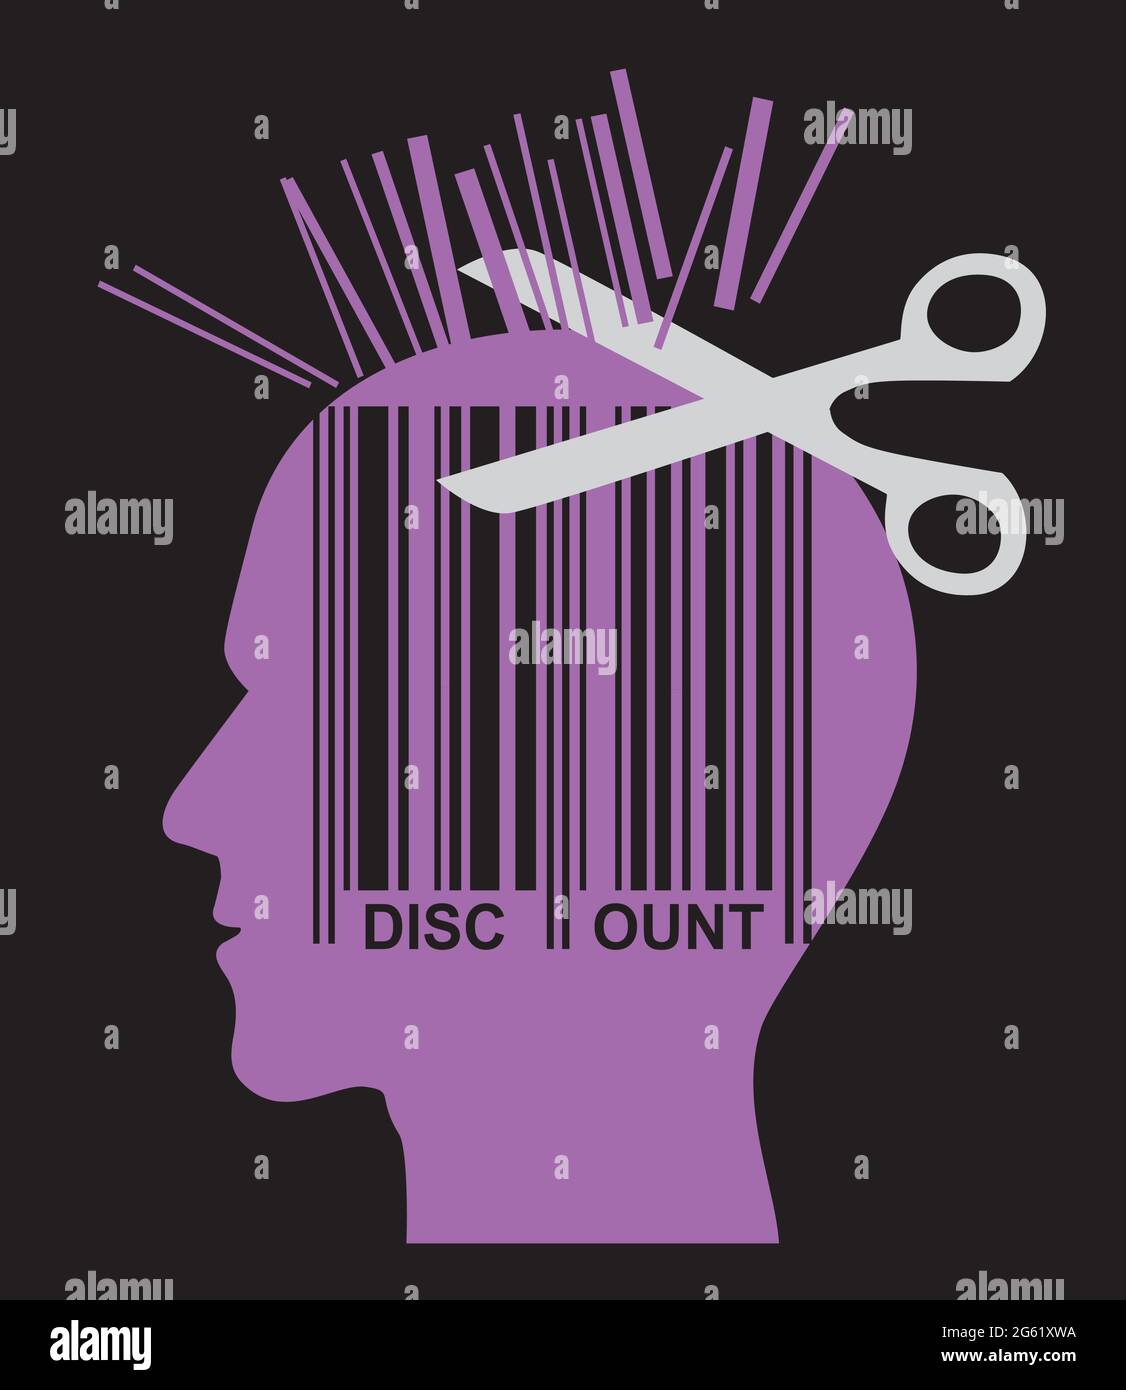 Friseur Preisabschlag, Rabatt-Konzept. Illustration von stilisierten jungen violetten männlichen Kopf Silhouette, mit Schere und Barcode.Vektor verfügbar Stock Vektor